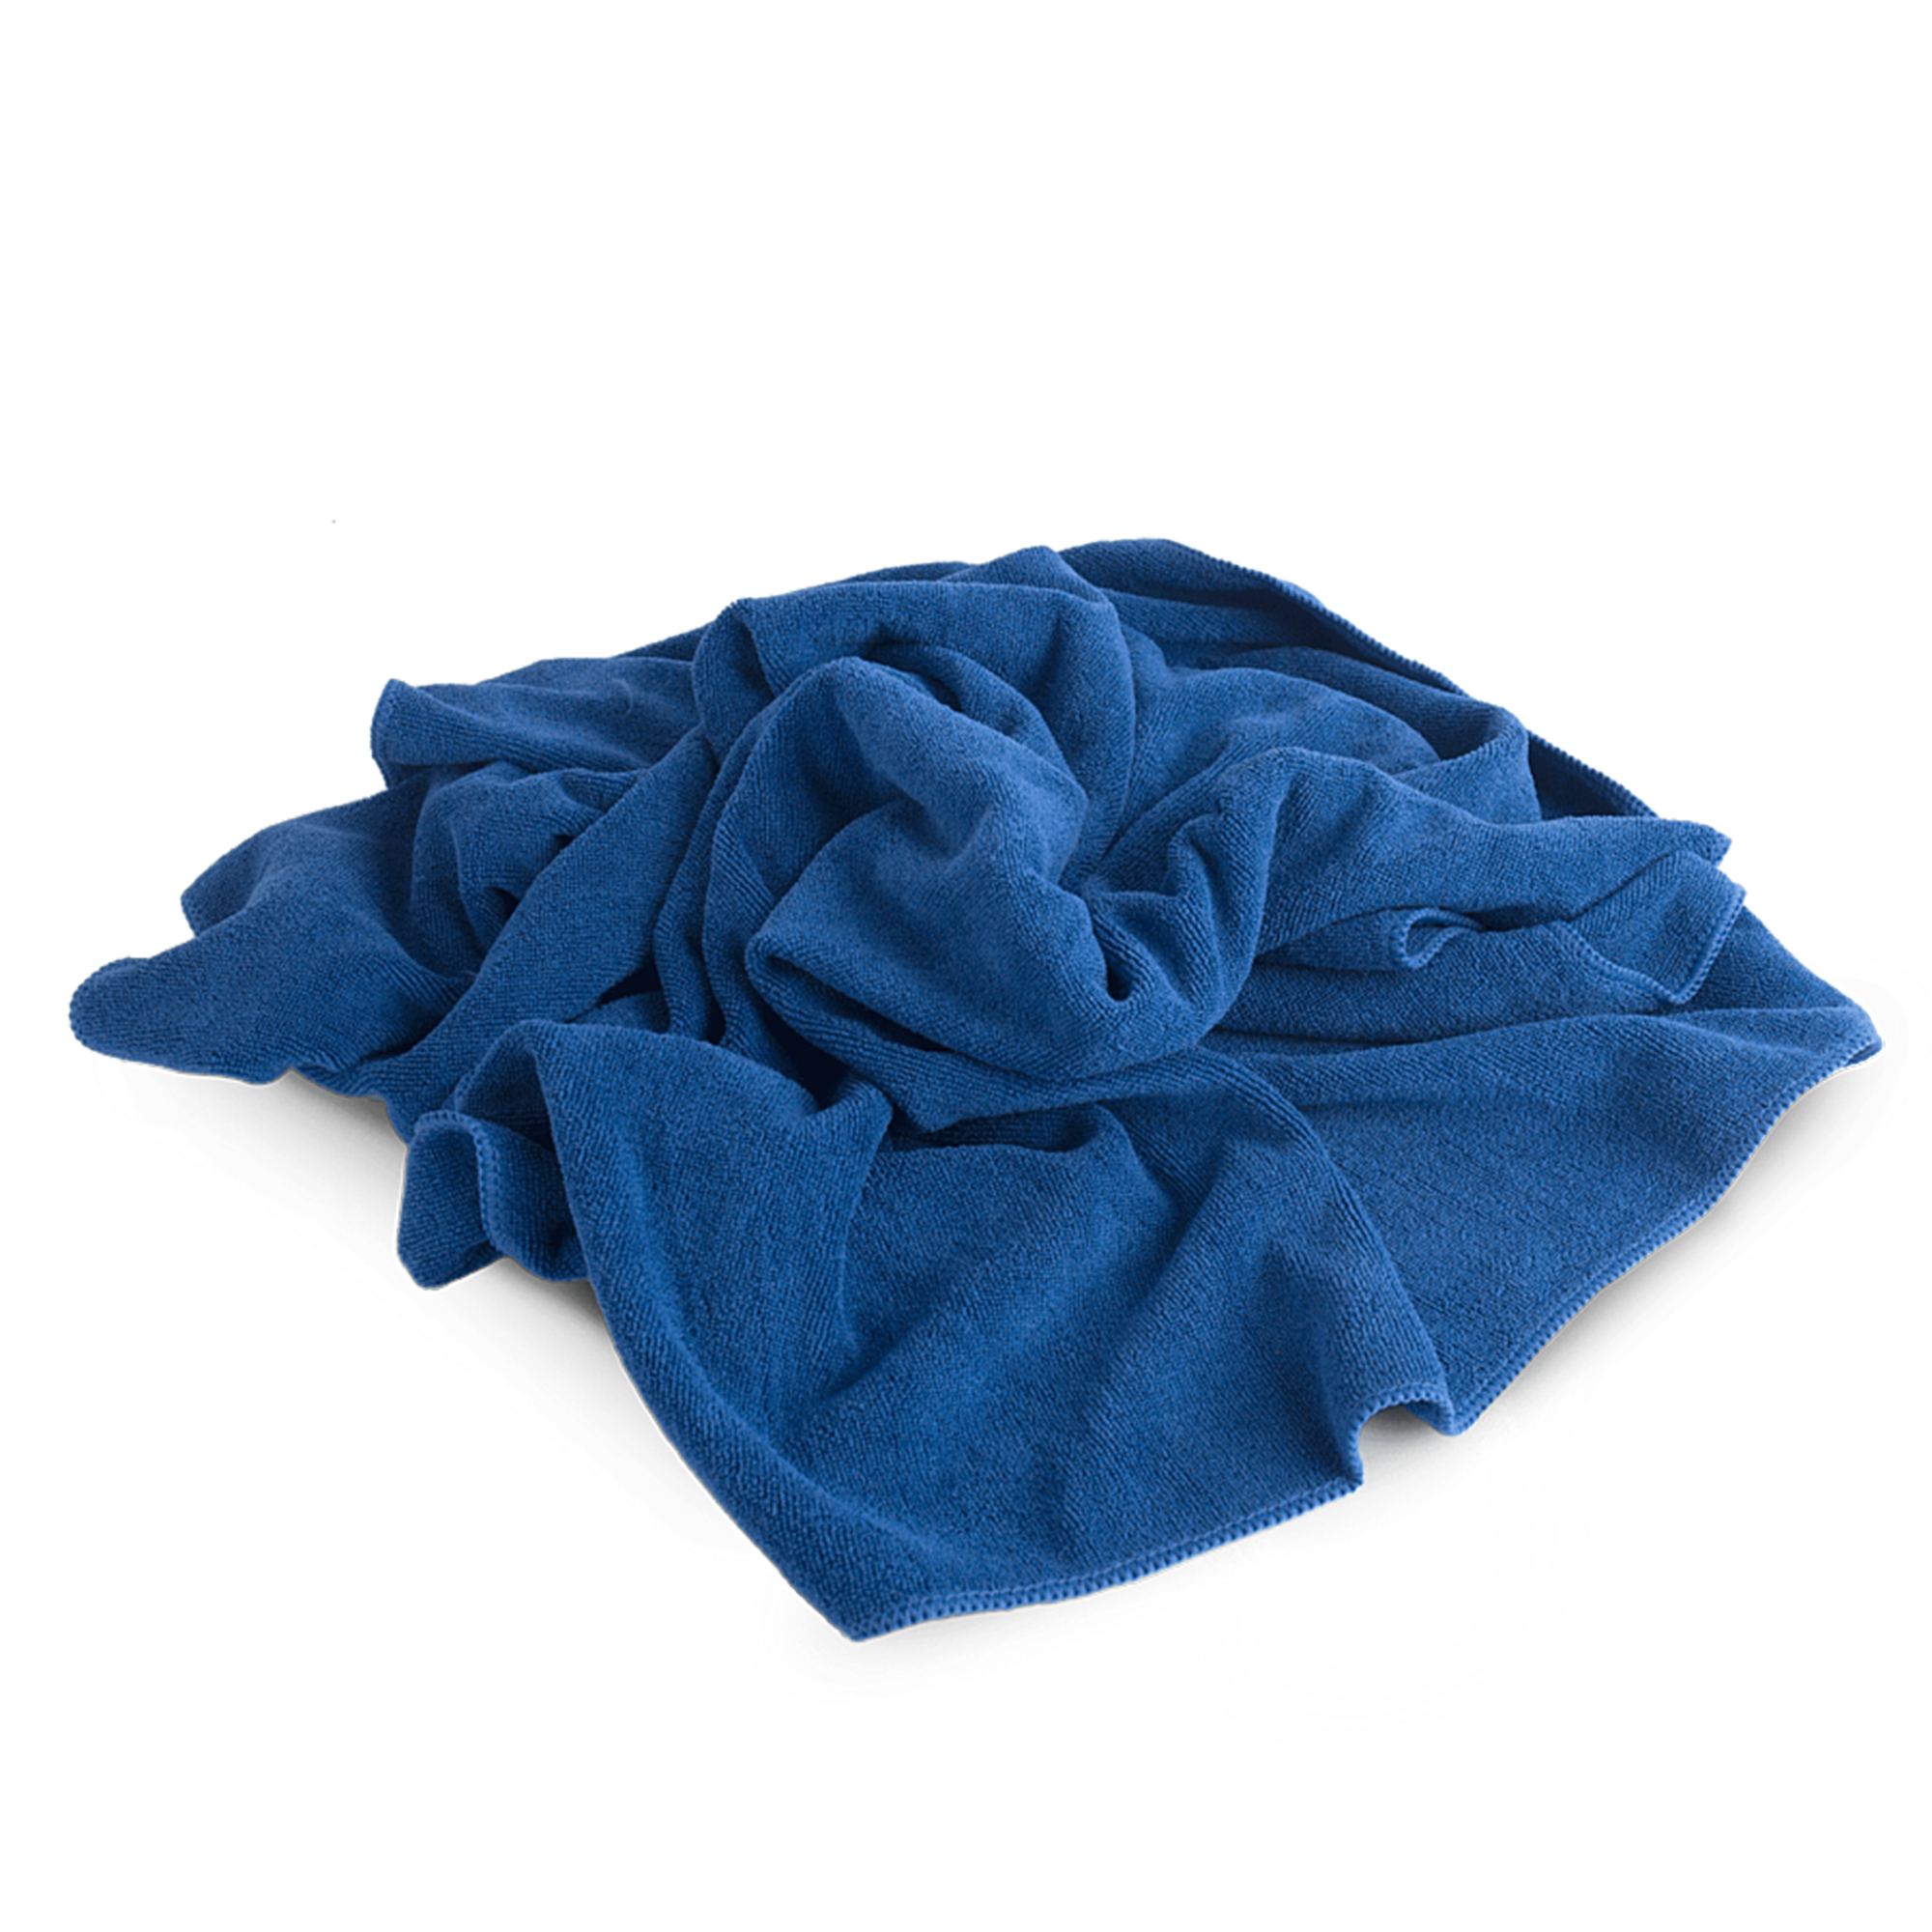 Полотенце оверлоченное для сушки авто синее Profi-Microfasertuch 55*80см AUTECH